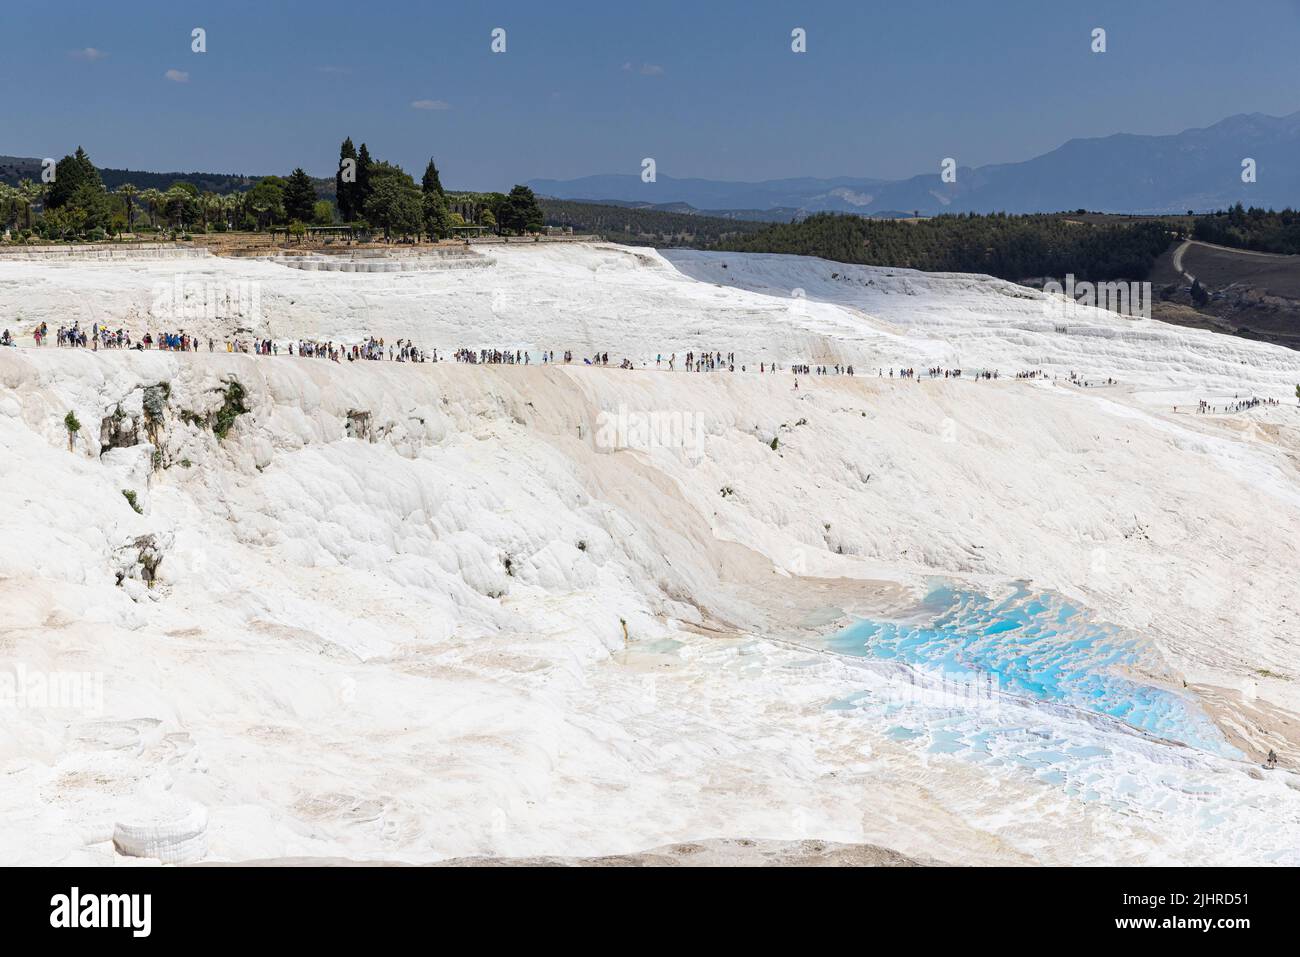 vue sur les piscines naturelles de calcaire de pamukkale, une foule de touristes. Turquie. Banque D'Images